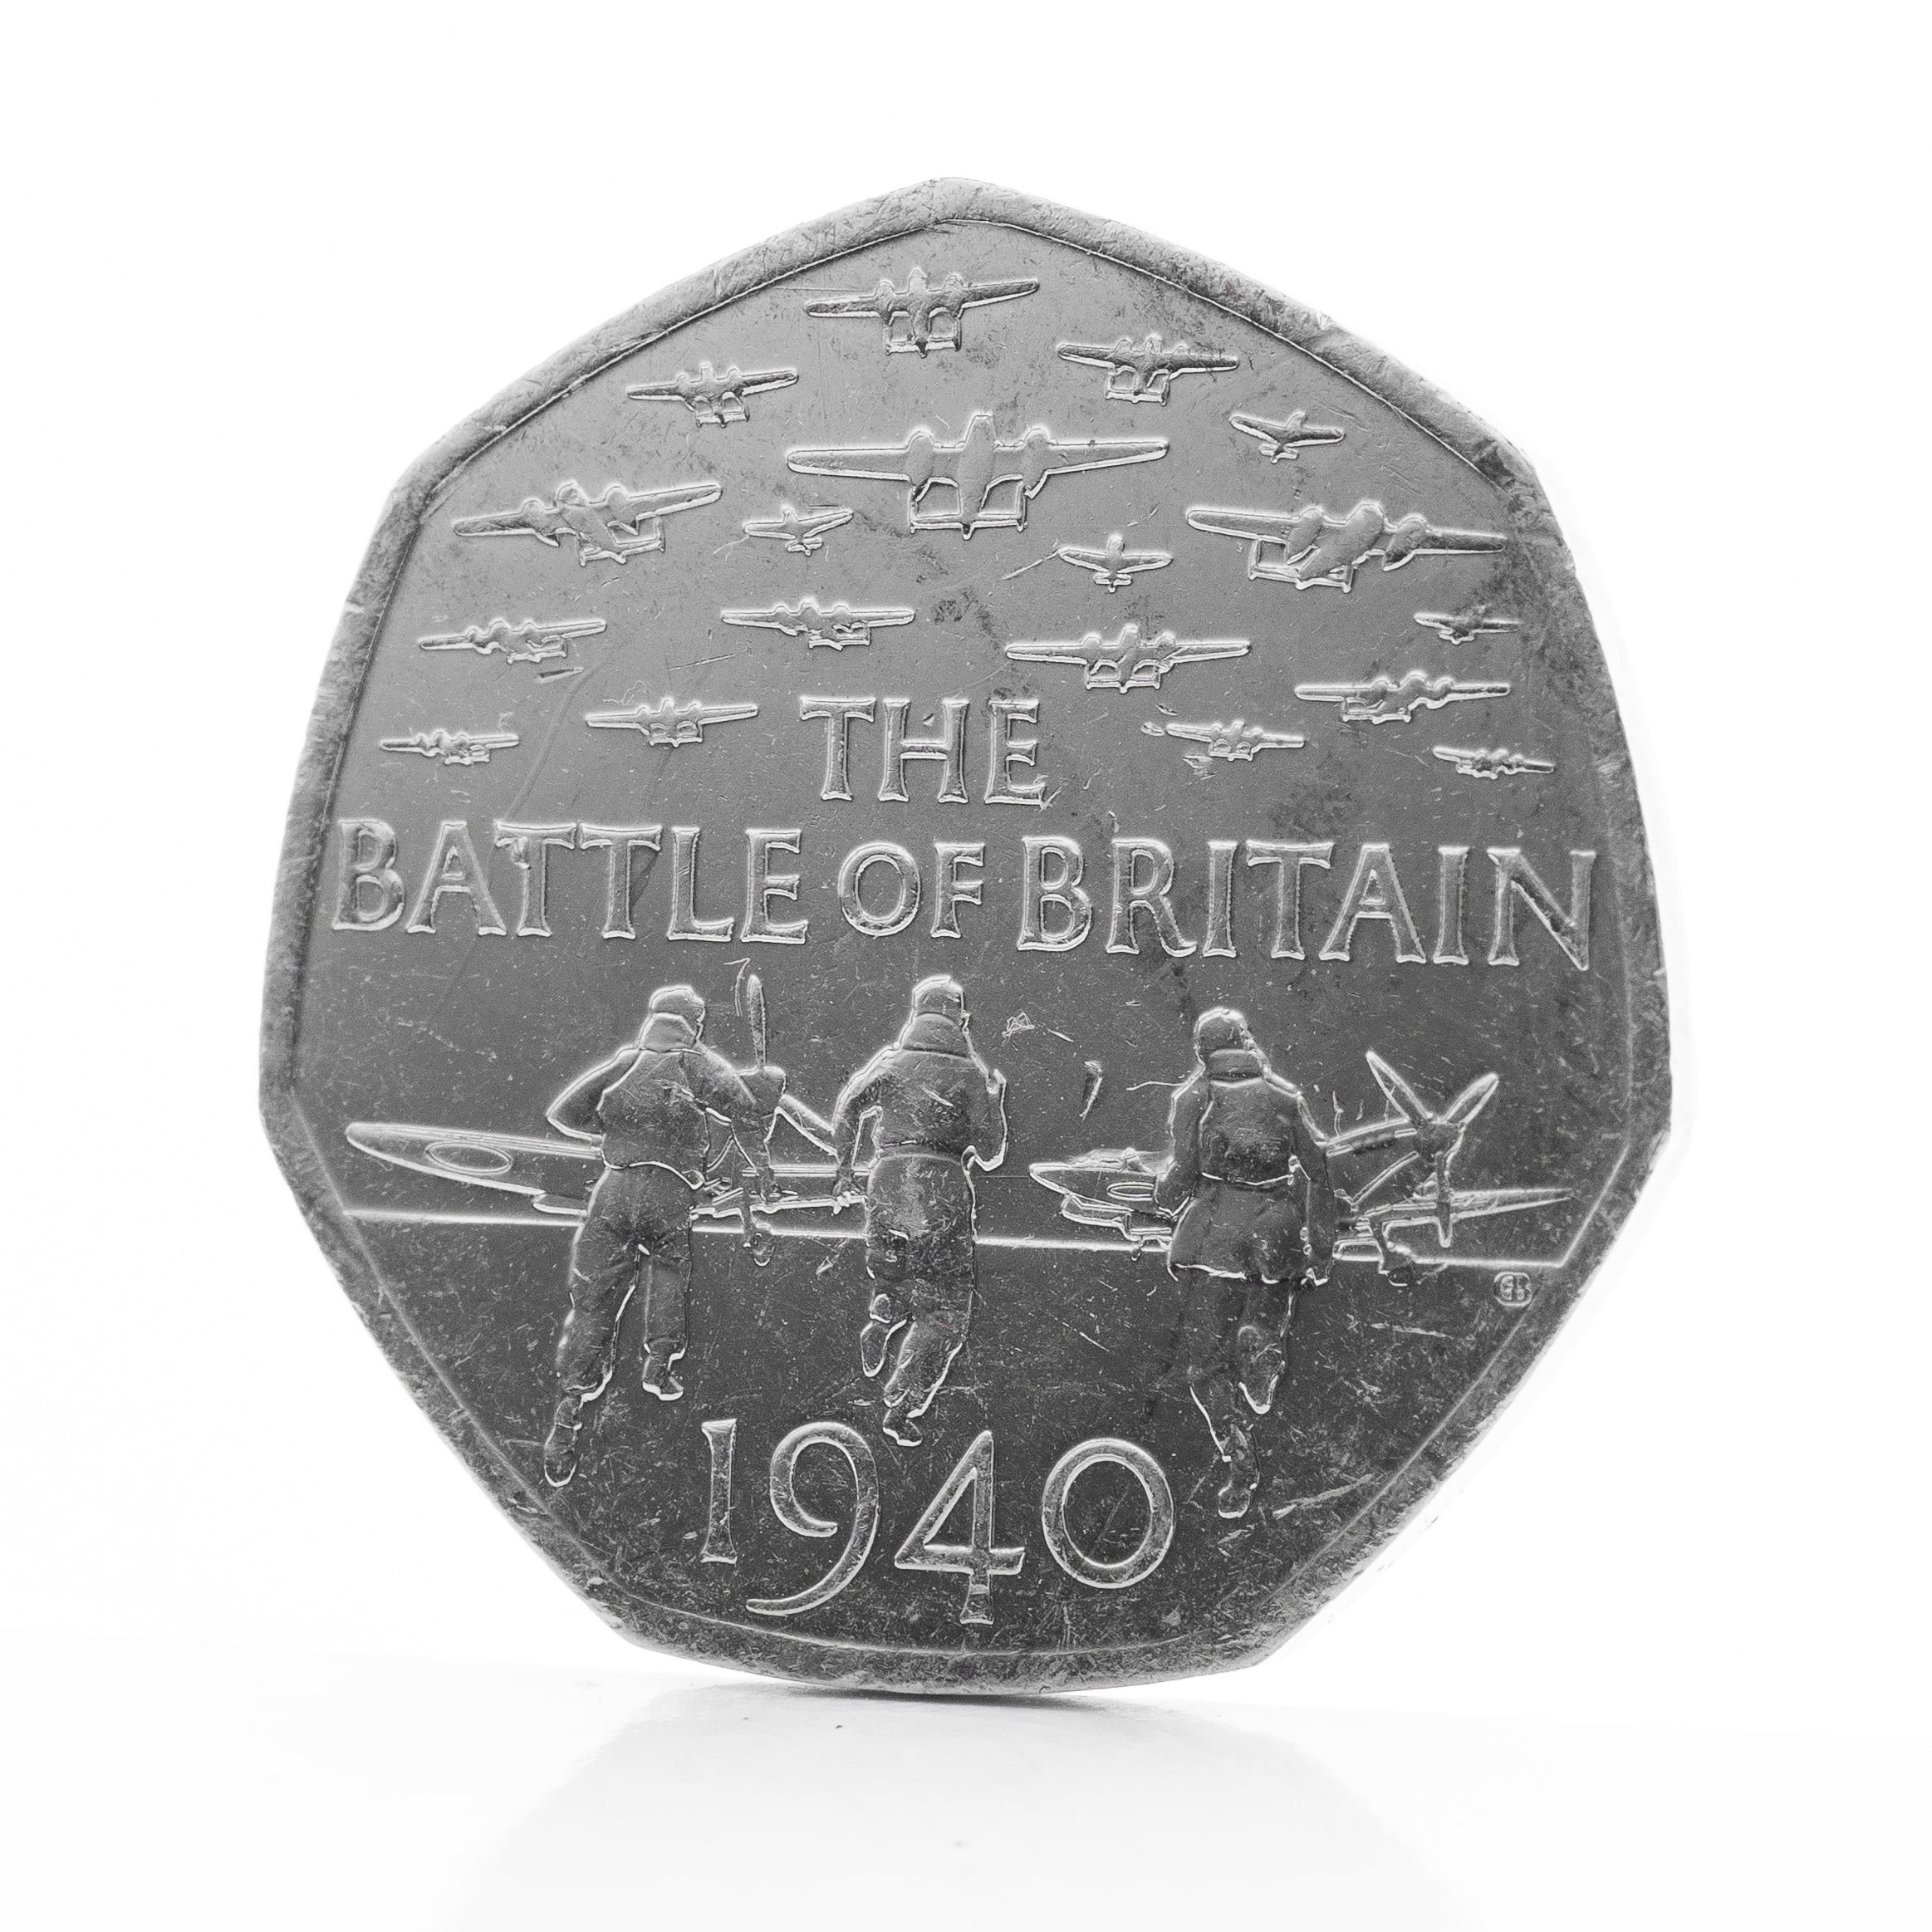 Battle of Britain 50p design